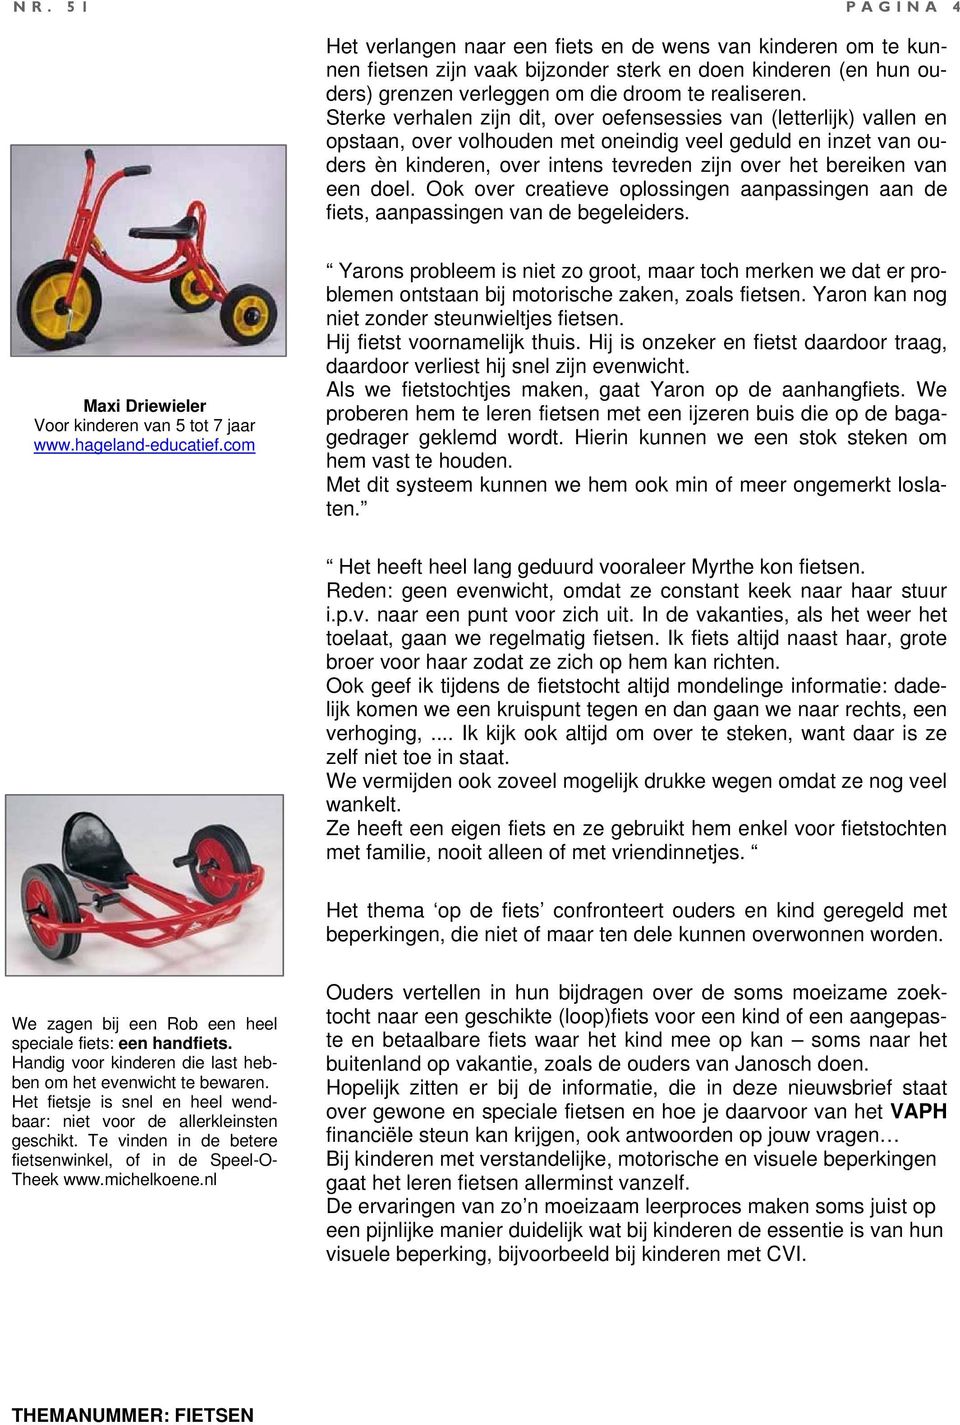 van een doel. Ook over creatieve oplossingen aanpassingen aan de fiets, aanpassingen van de begeleiders. Maxi Driewieler Voor kinderen van 5 tot 7 jaar www.hageland-educatief.